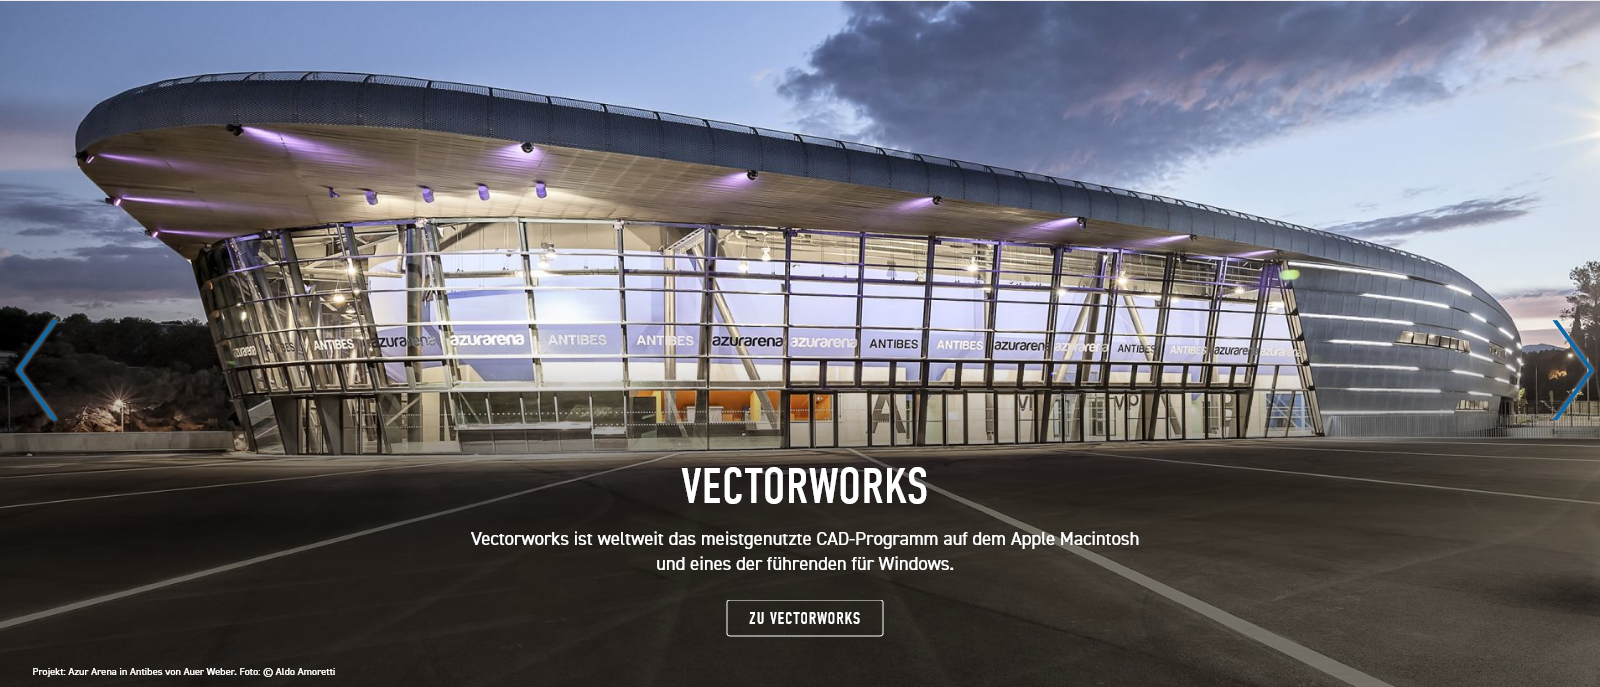 Vectorworks und EDV&CAD